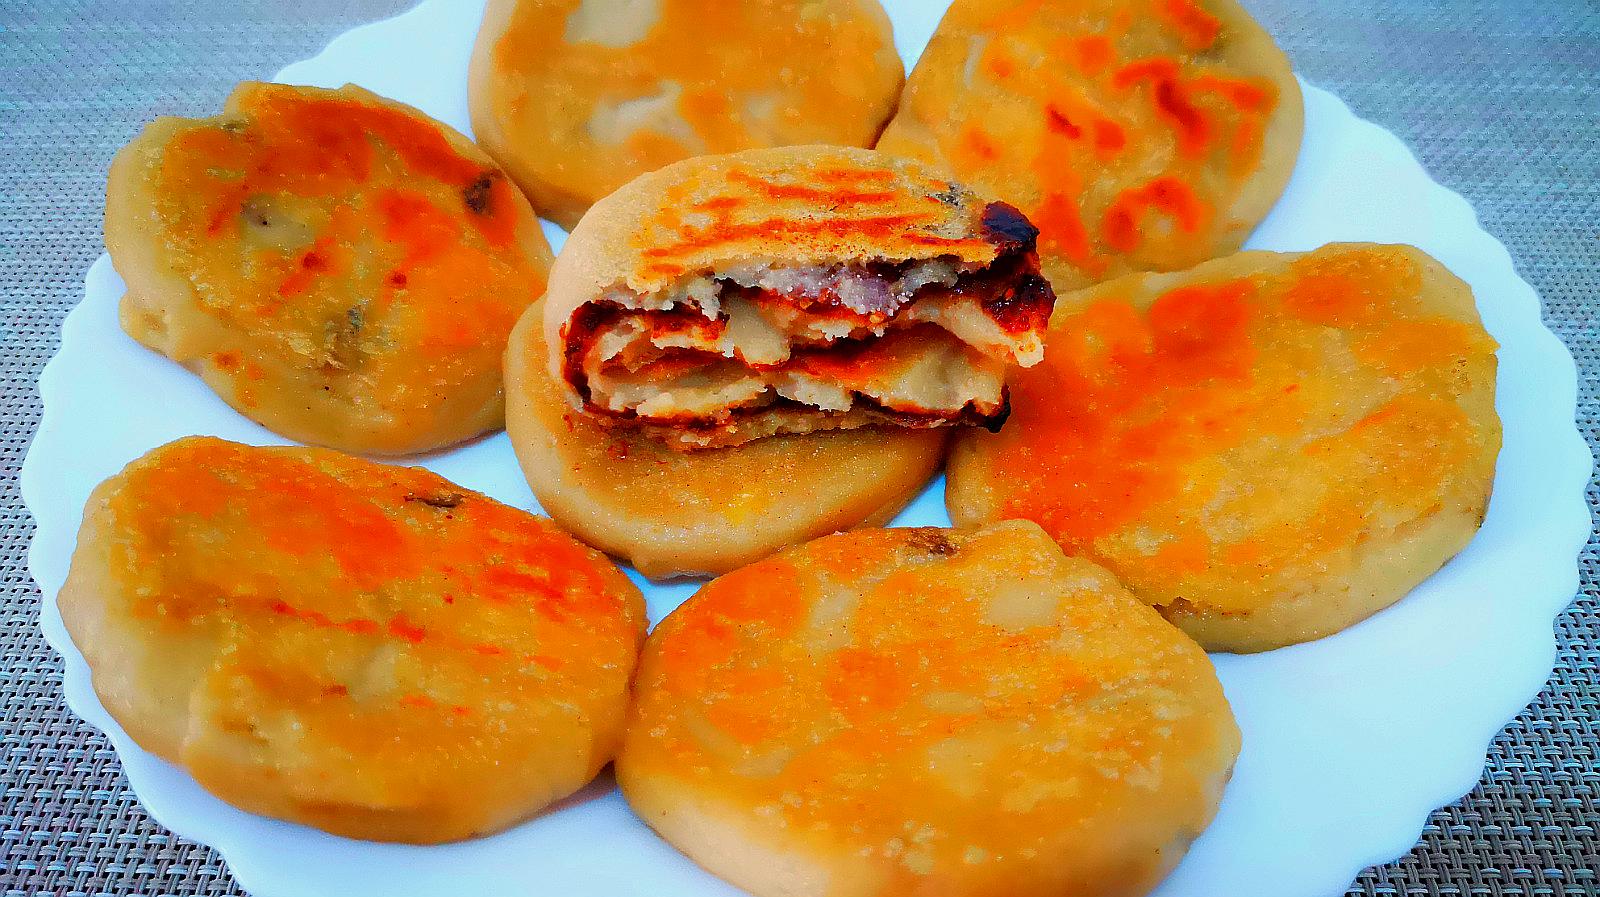 2冬瓜饼:蓬松香甜的美食,做法简单,冬瓜香气满满,营养又美味!